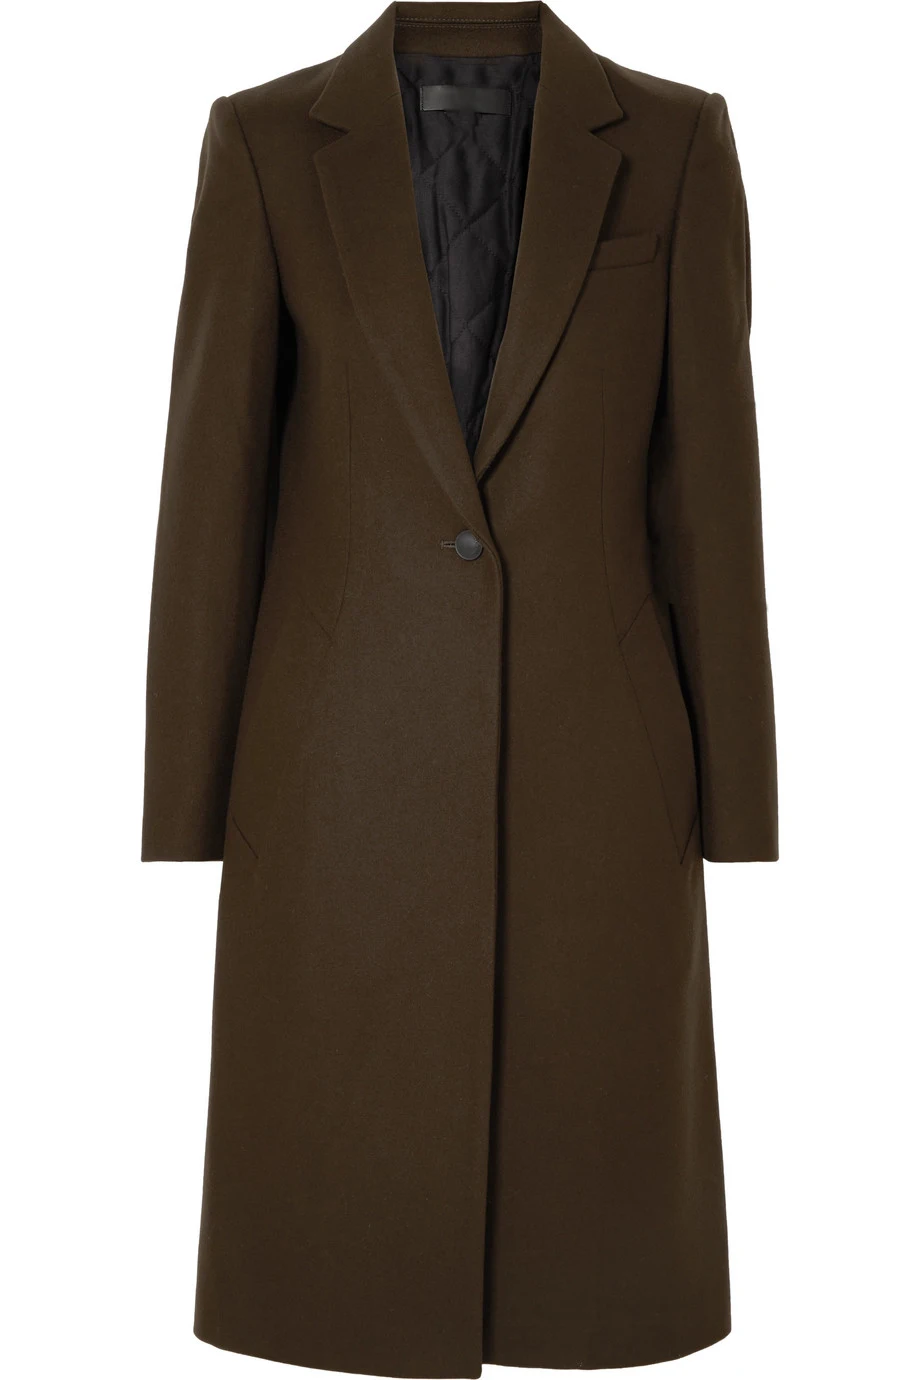 Офисное женское новое шерстяное пальто, куртка, Женское зимнее пальто, новое модное шерстяное пальто средней длины, элегантная верхняя одежда, Женское пальто XXL - Цвет: Coffee Plus Cotton